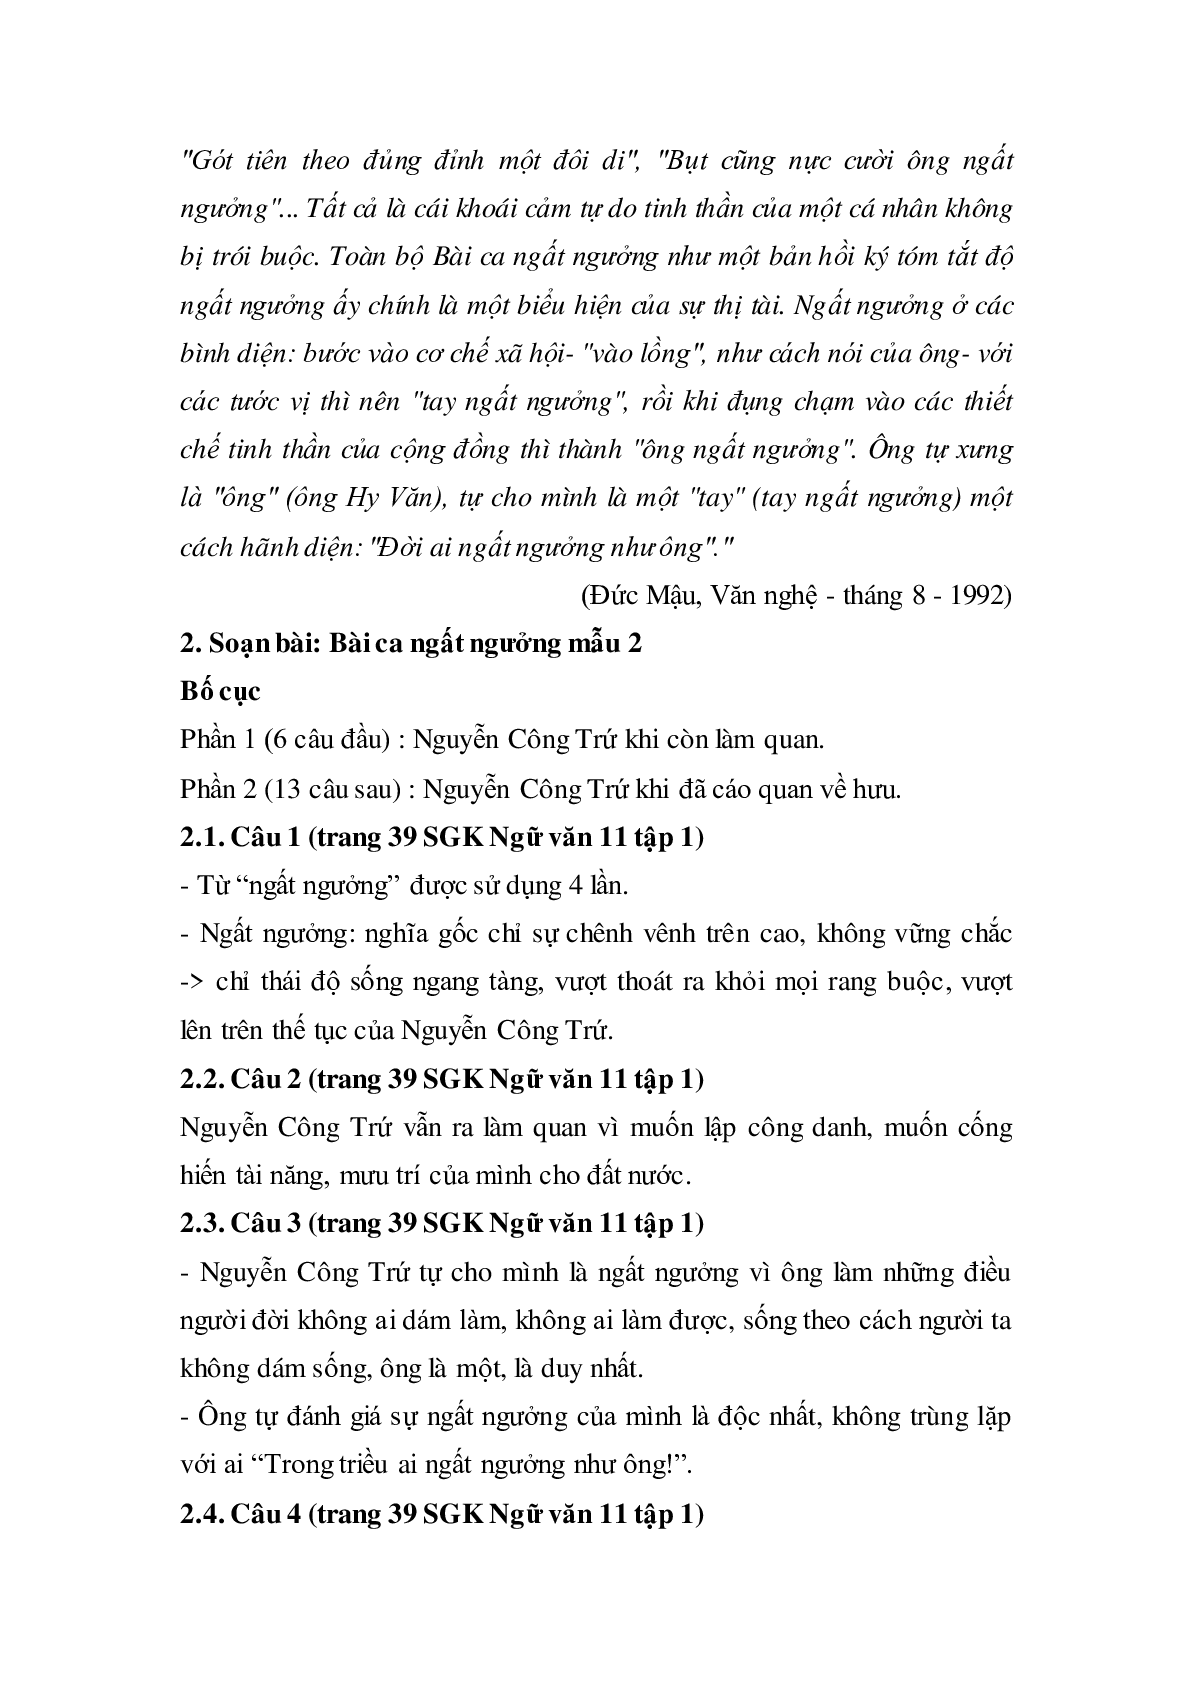 Soạn bài Bài ca ngất ngưởng - ngắn nhất Soạn văn 11 (trang 5)